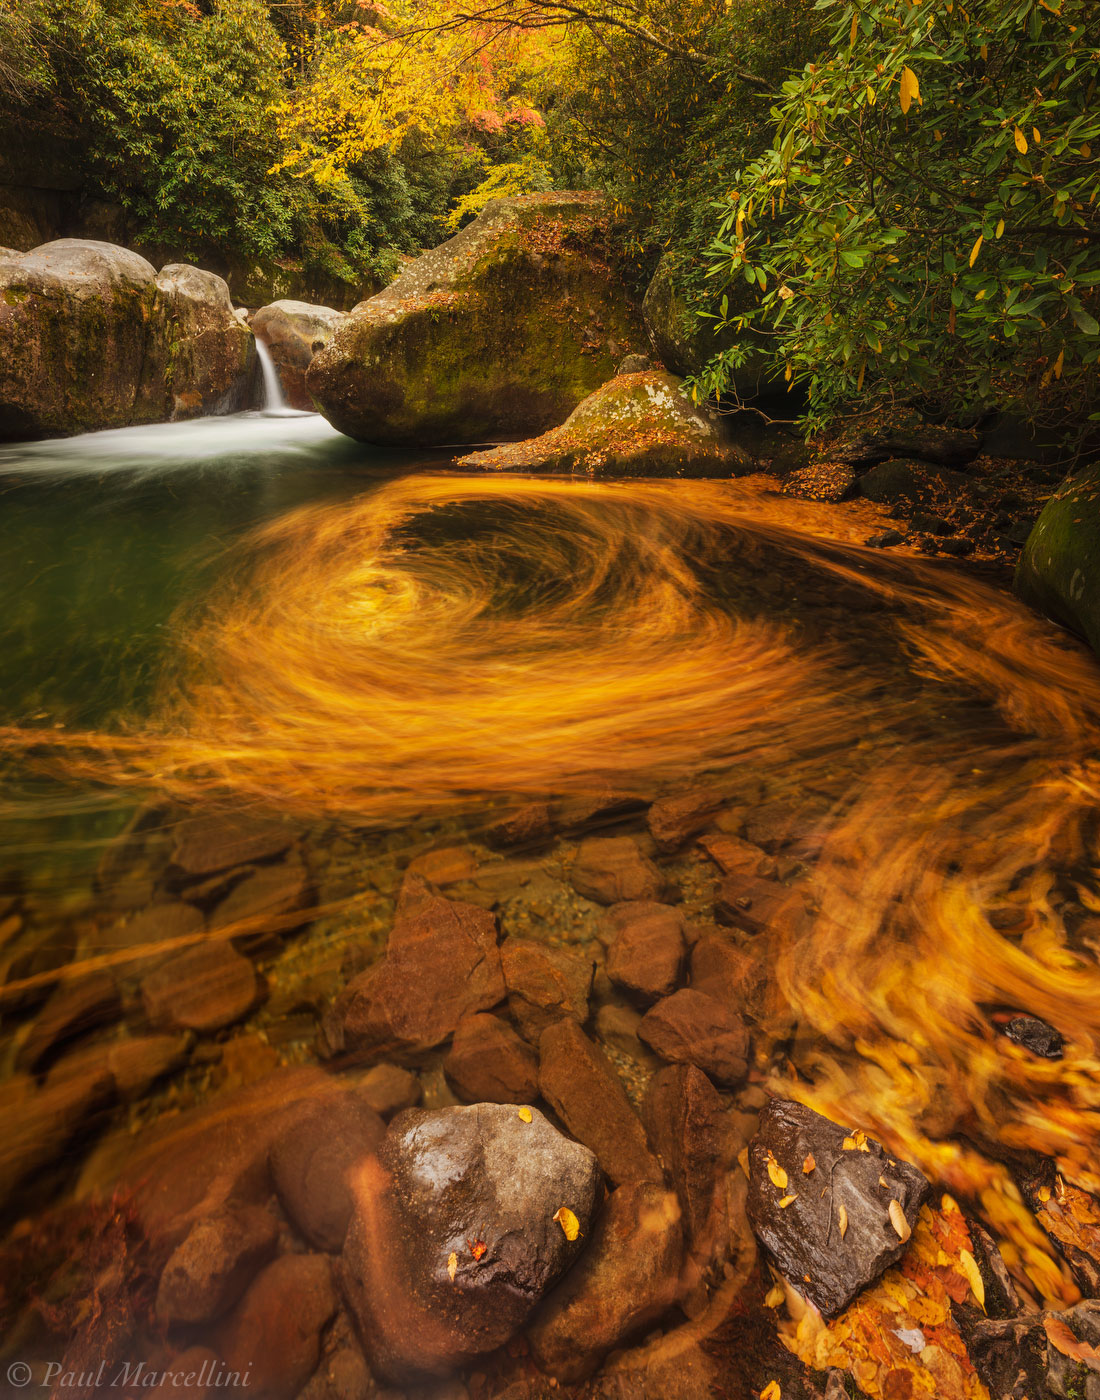 A long exposure swirls fallen leaves in a pool of water below a small cascade.